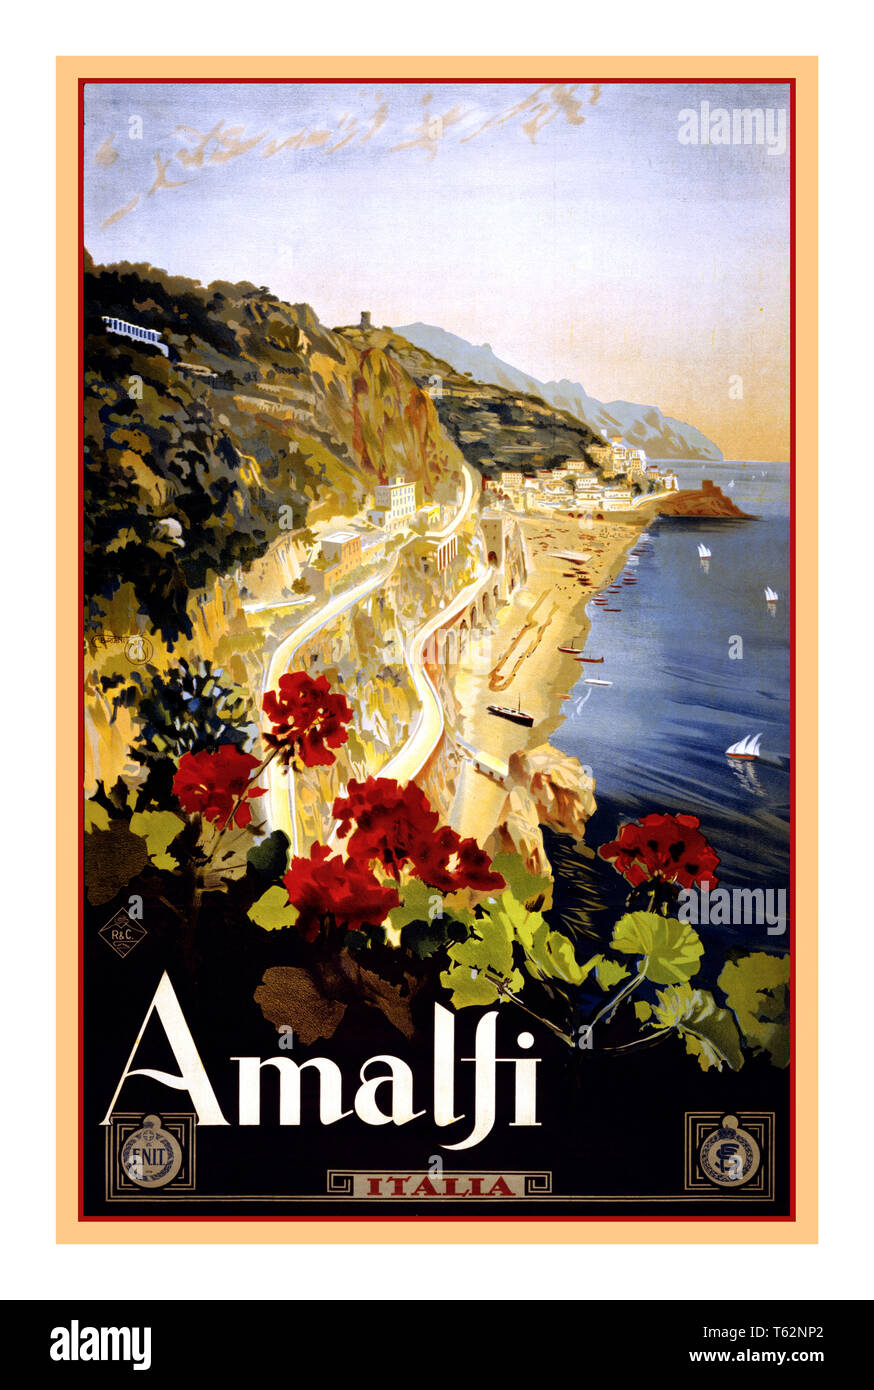 AMALFI Vintage Poster de viaje histórico 1900 Amalfi Italia Travel cartel por Mario Borgoni, muestra la costa amalfitana con geranios en primer plano. Fecha 1920 Amalfi Campania Italia Foto de stock